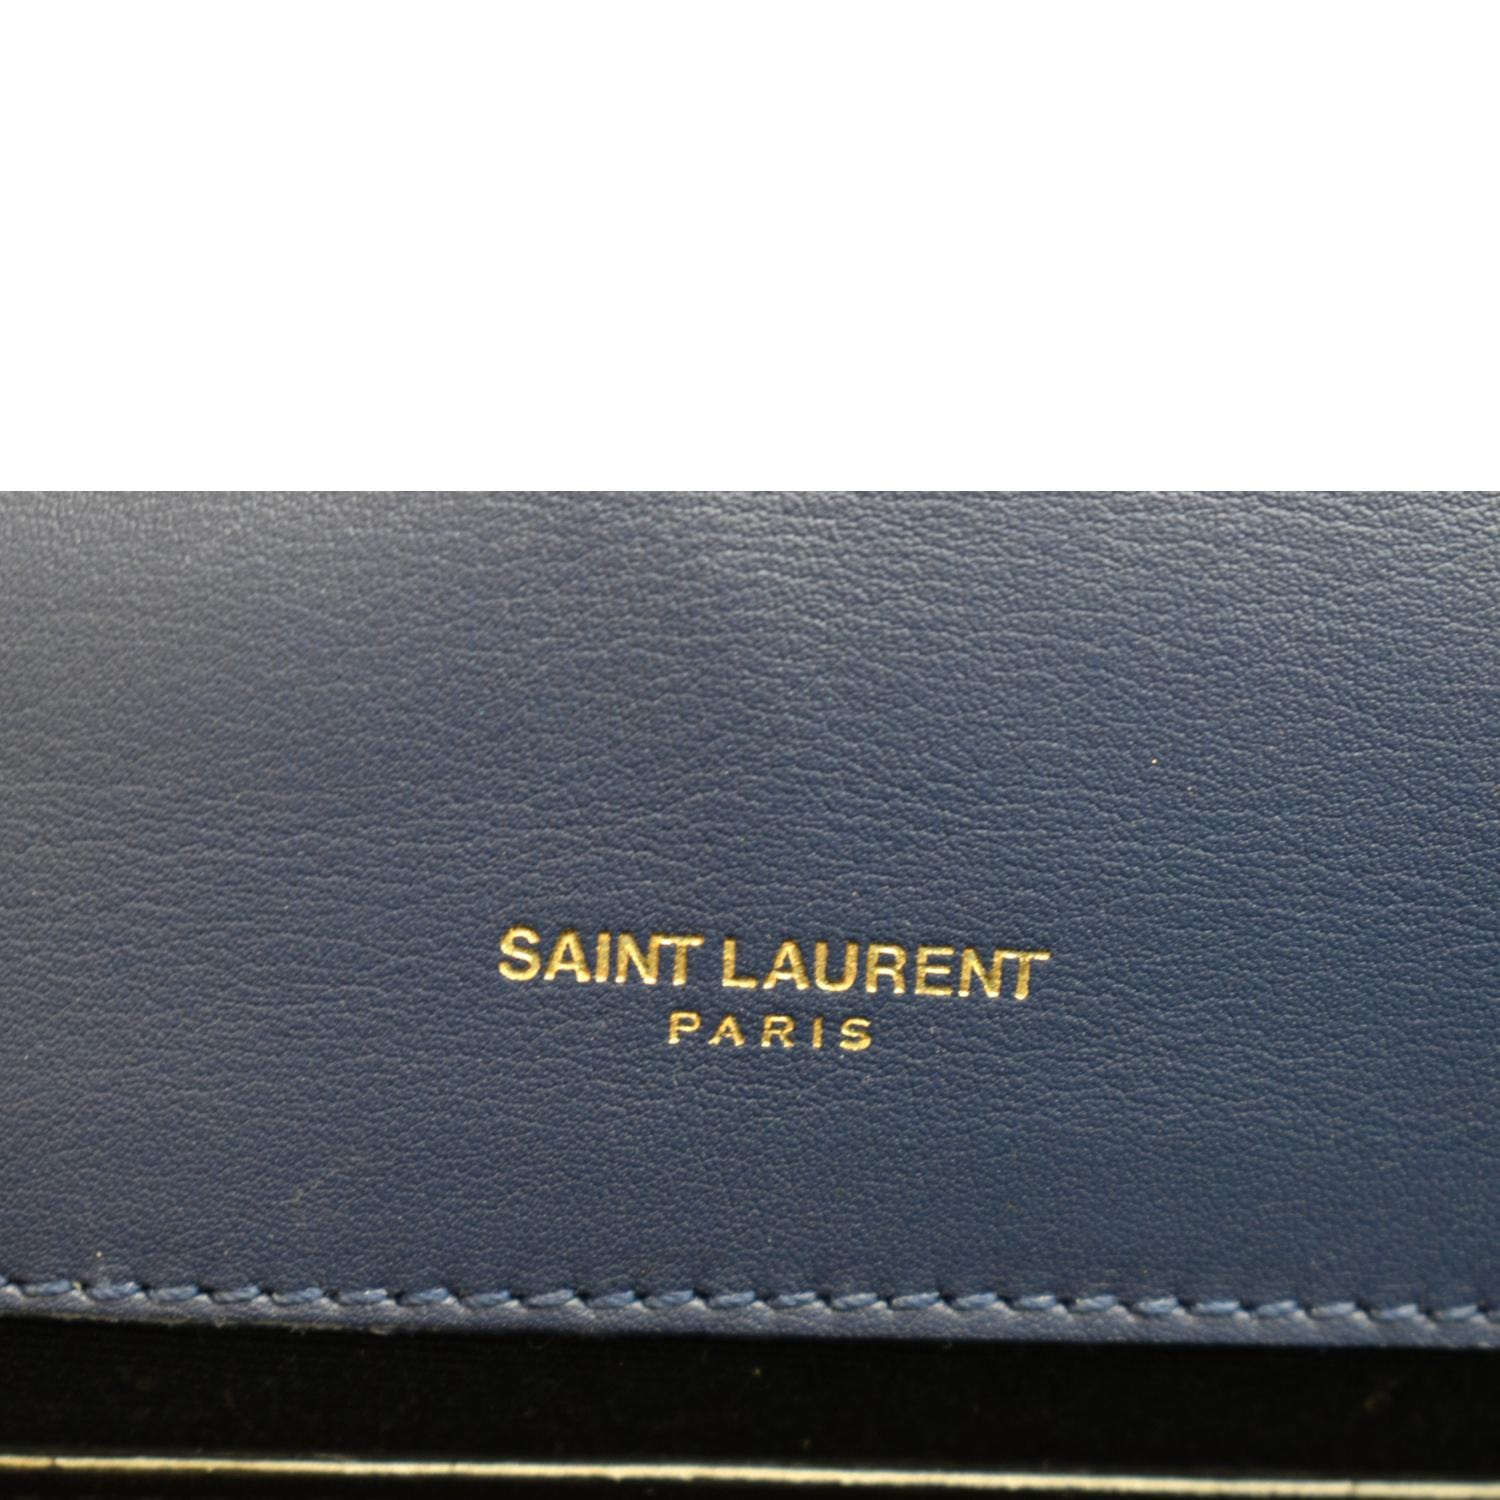 saint laurent kate On Sale - Authenticated Resale